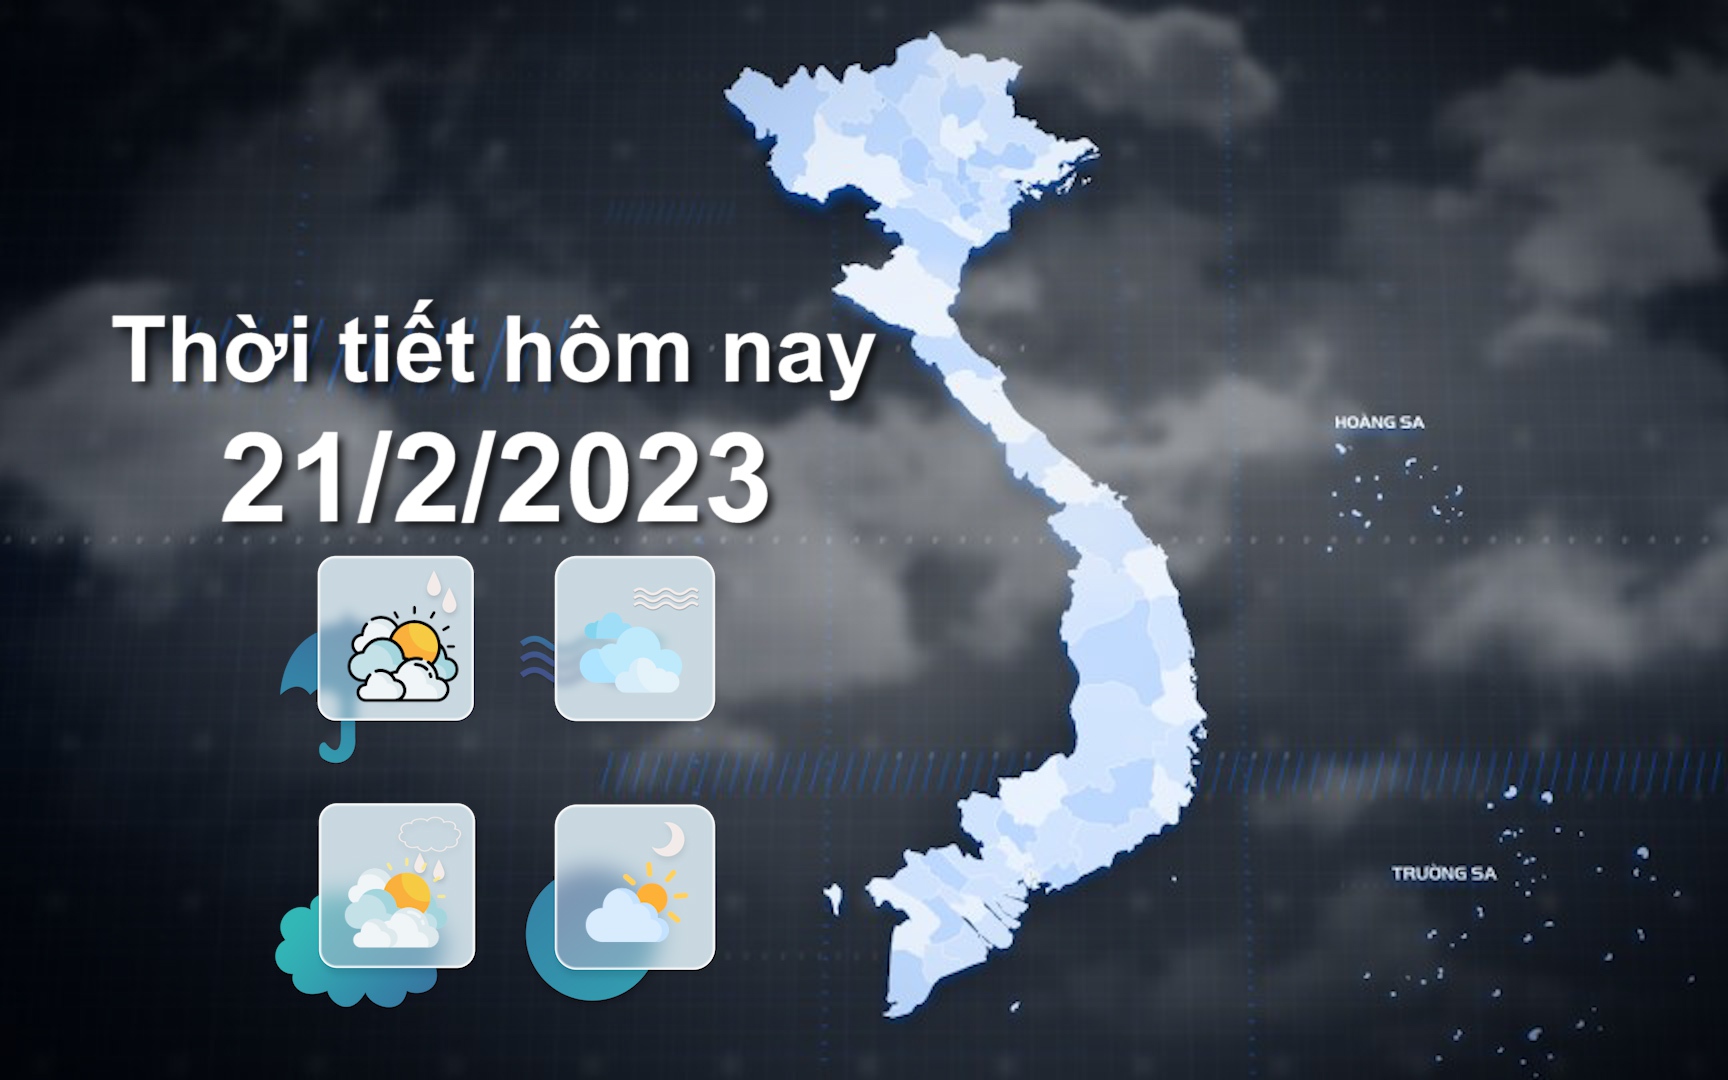 Thời tiết hôm nay 21/2/2023: Tây Nguyên, Nam Bộ chiều tối có mưa vài nơi, ngày nắng